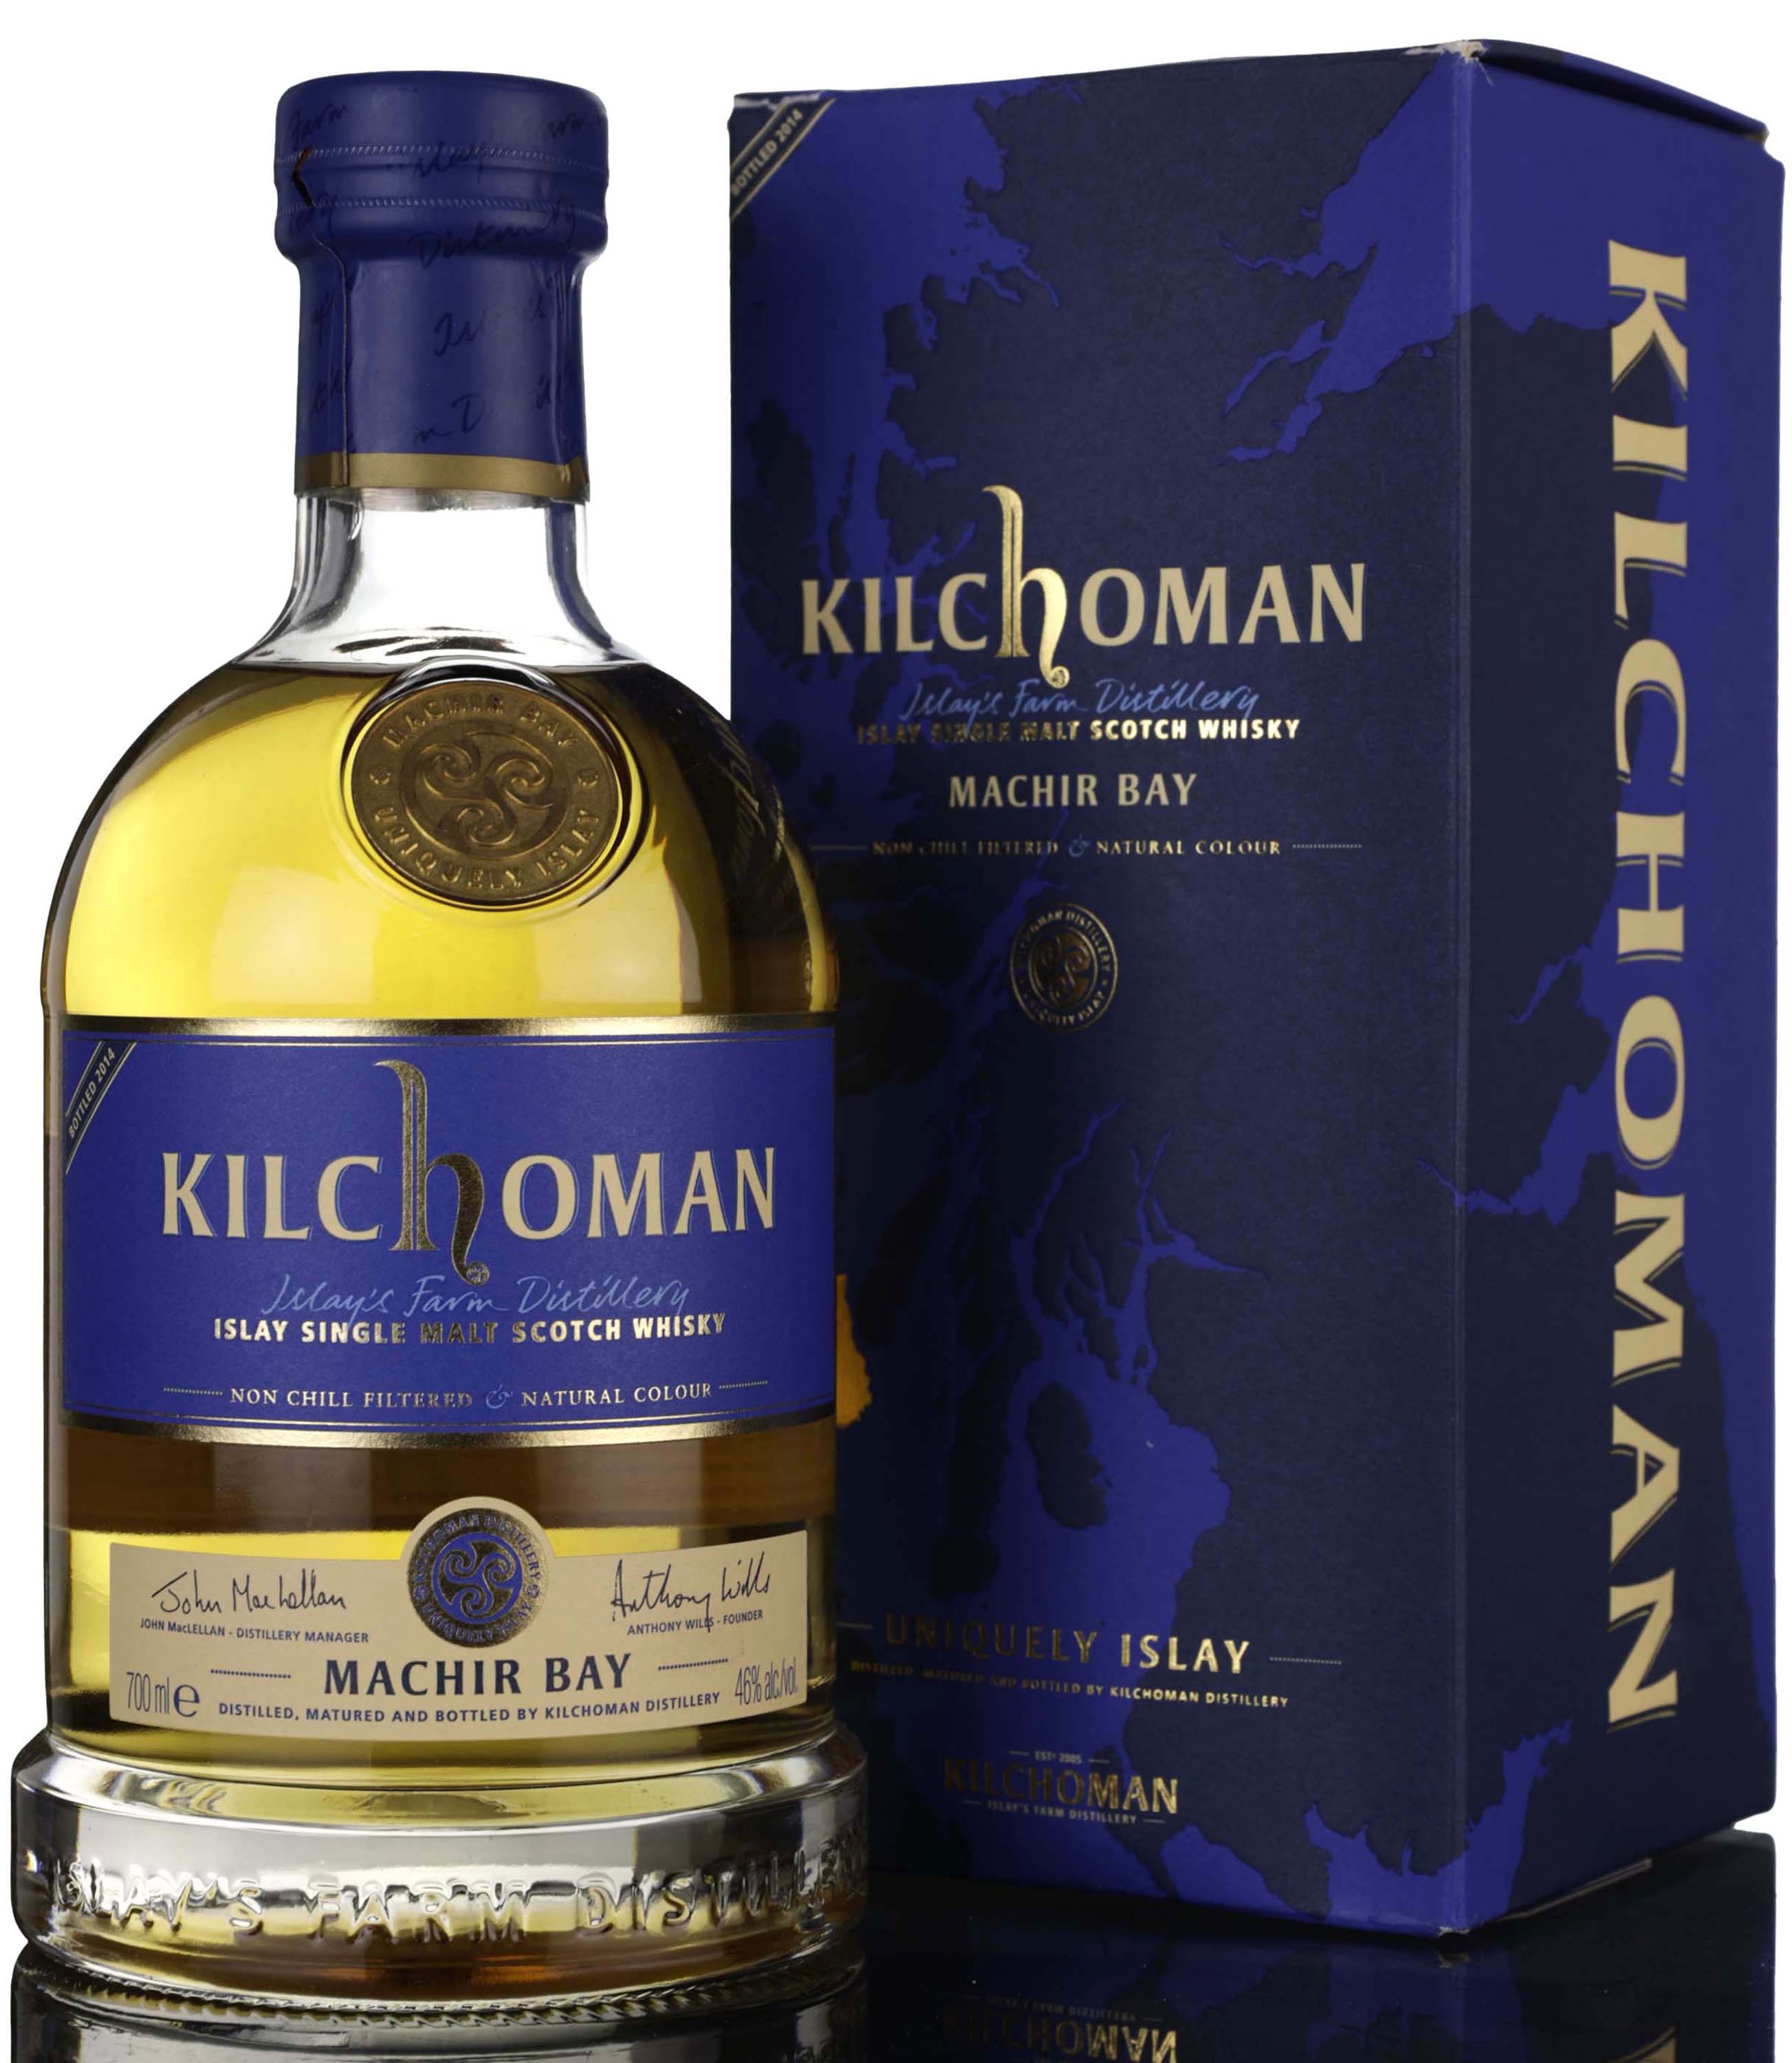 Kilchoman Machir Bay - 2014 Release